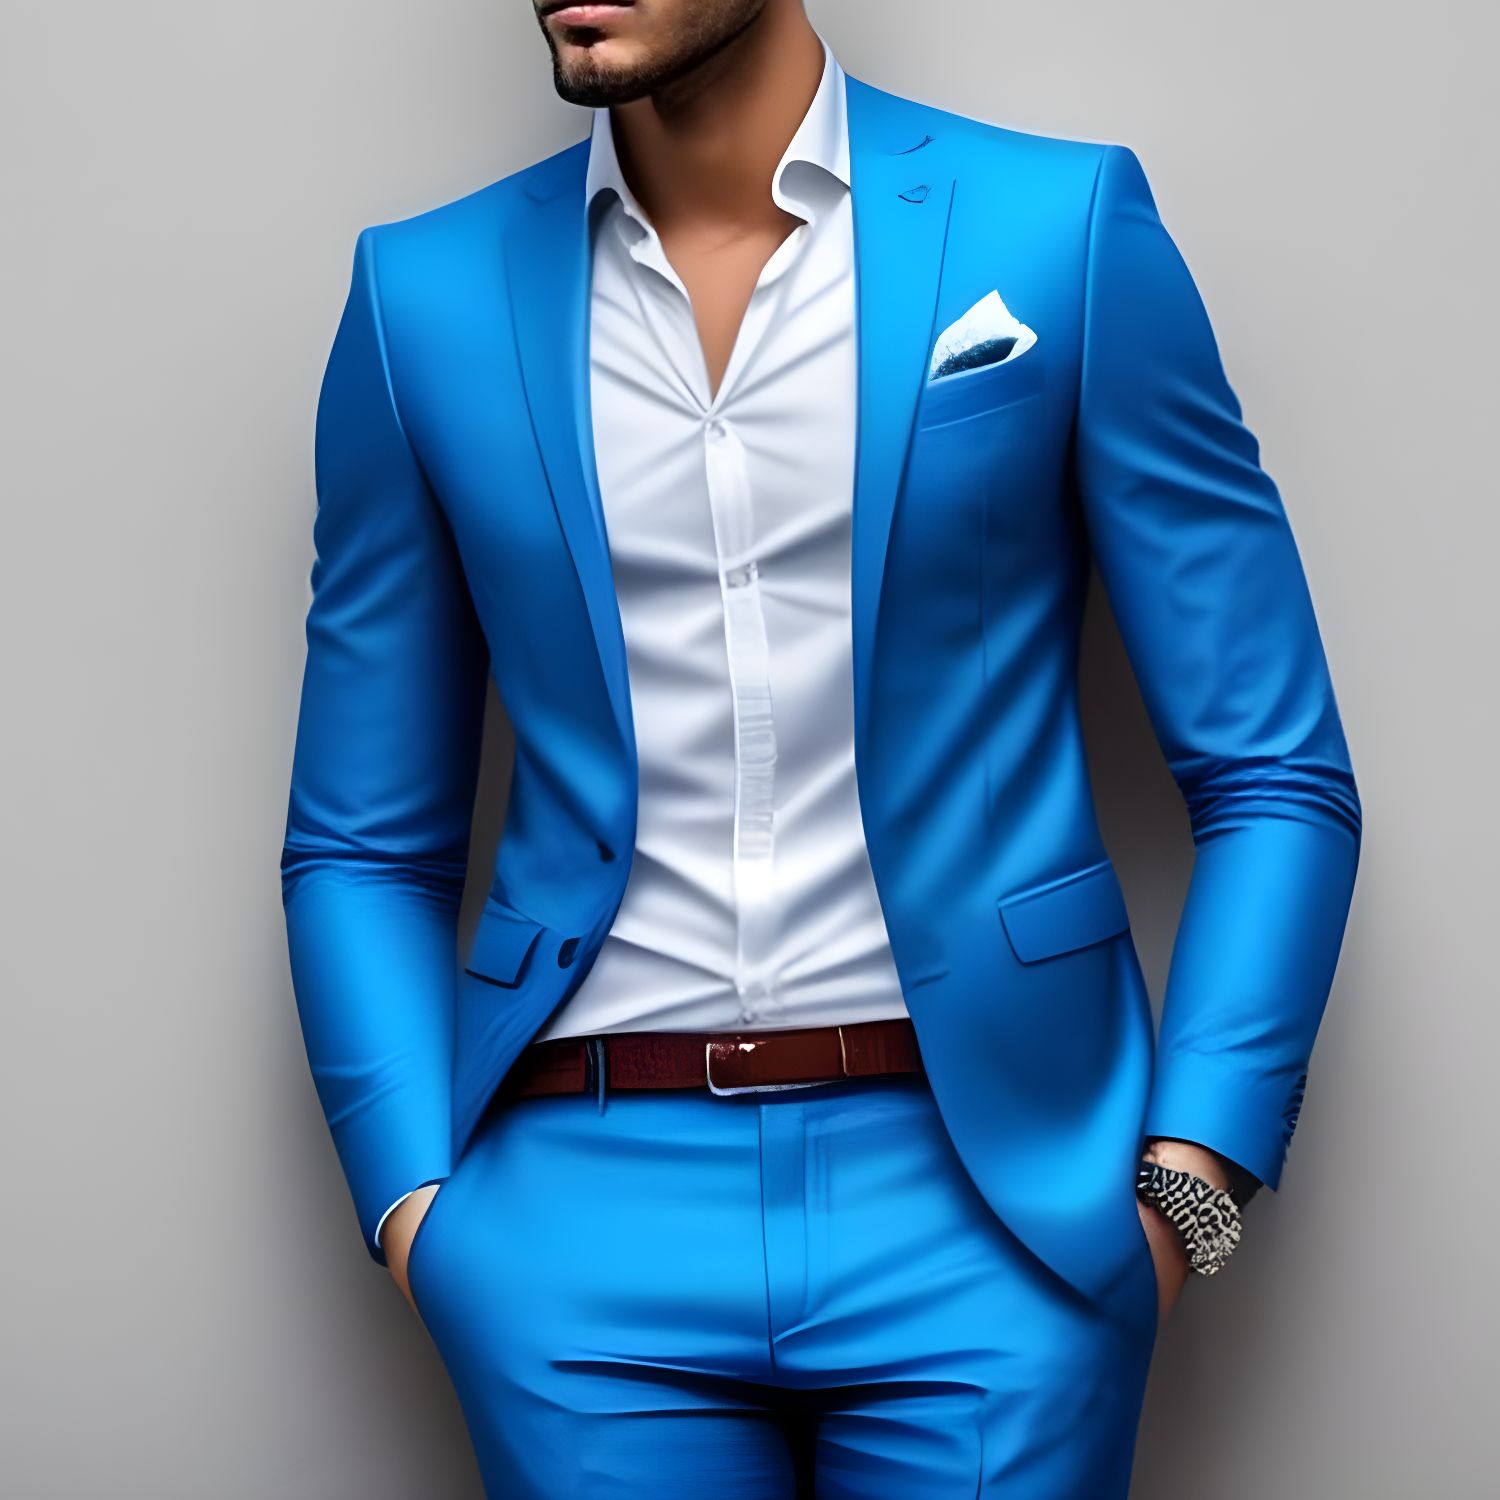 Lighter blue suit